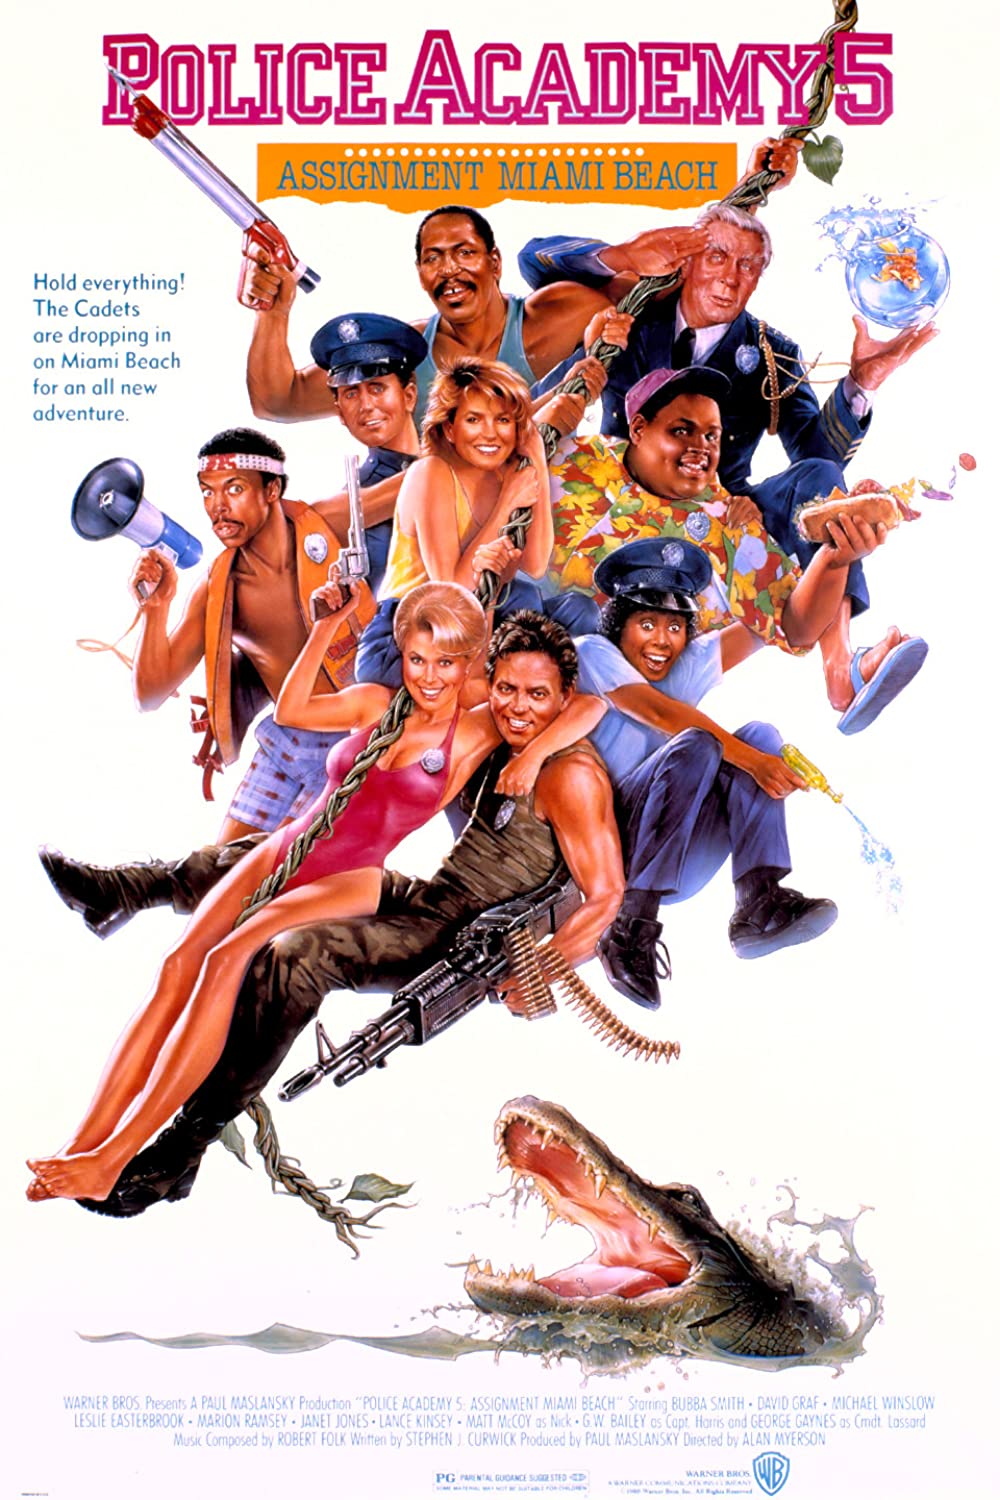 ดูหนังออนไลน์ฟรี Police Academy 5 (1988) โปลิศจิตไม่ว่าง ภาค 5